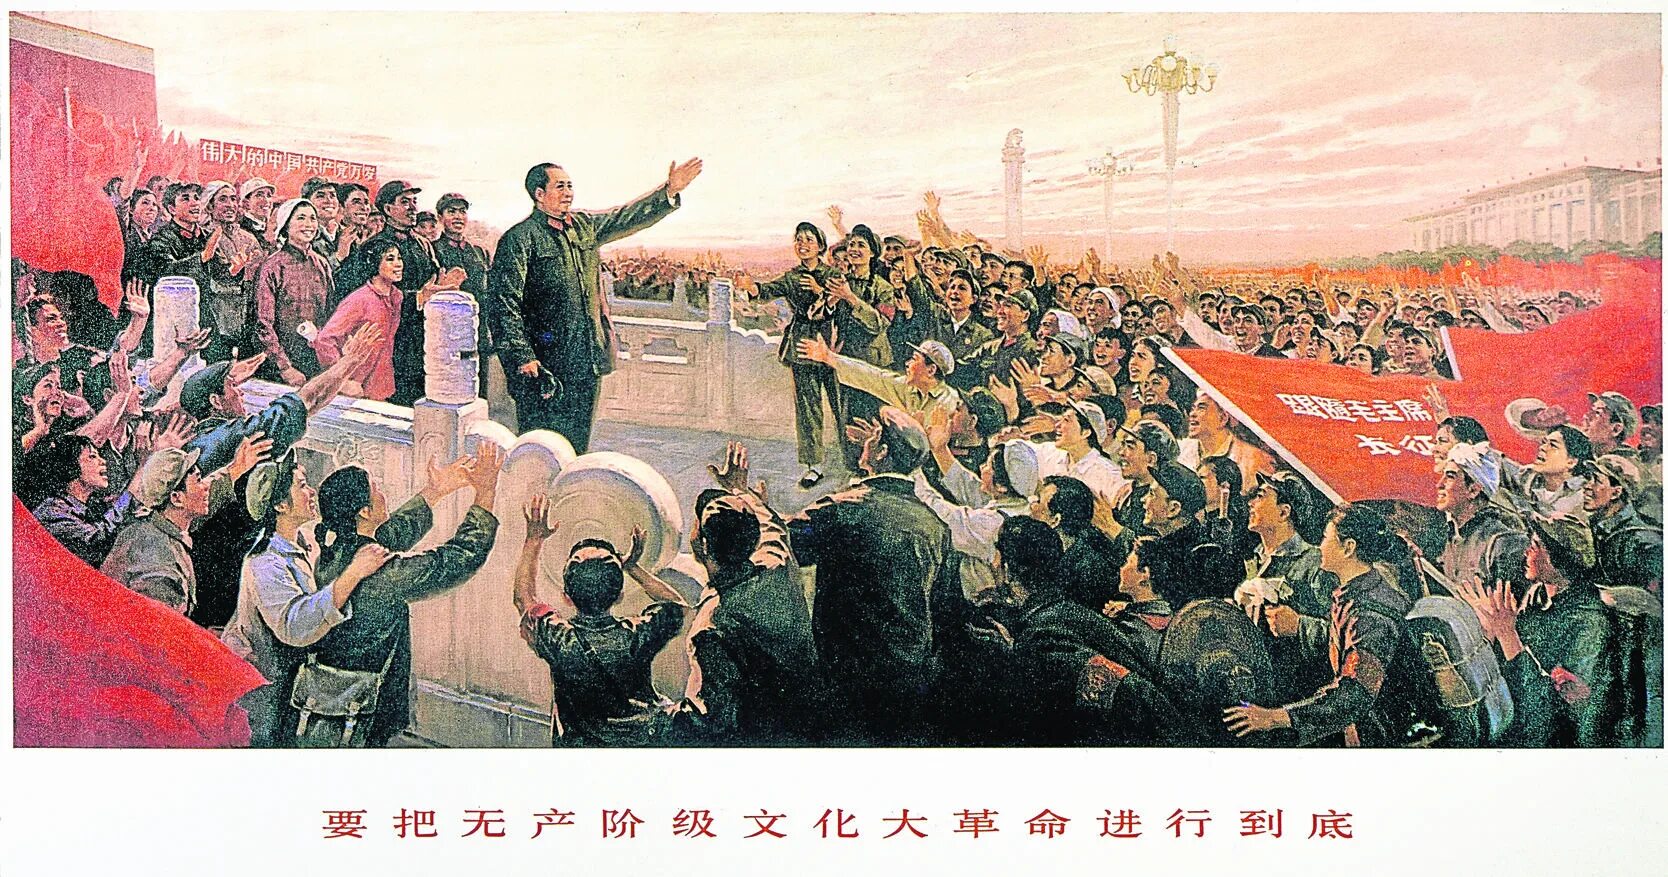 Большой скачок культурной революции. Мао Цзэдун революция. Мао Цзэдун 1966. Мао Цзэдун провозглашает КНР. Мао Цзэдун культурная революция хунвейбины.